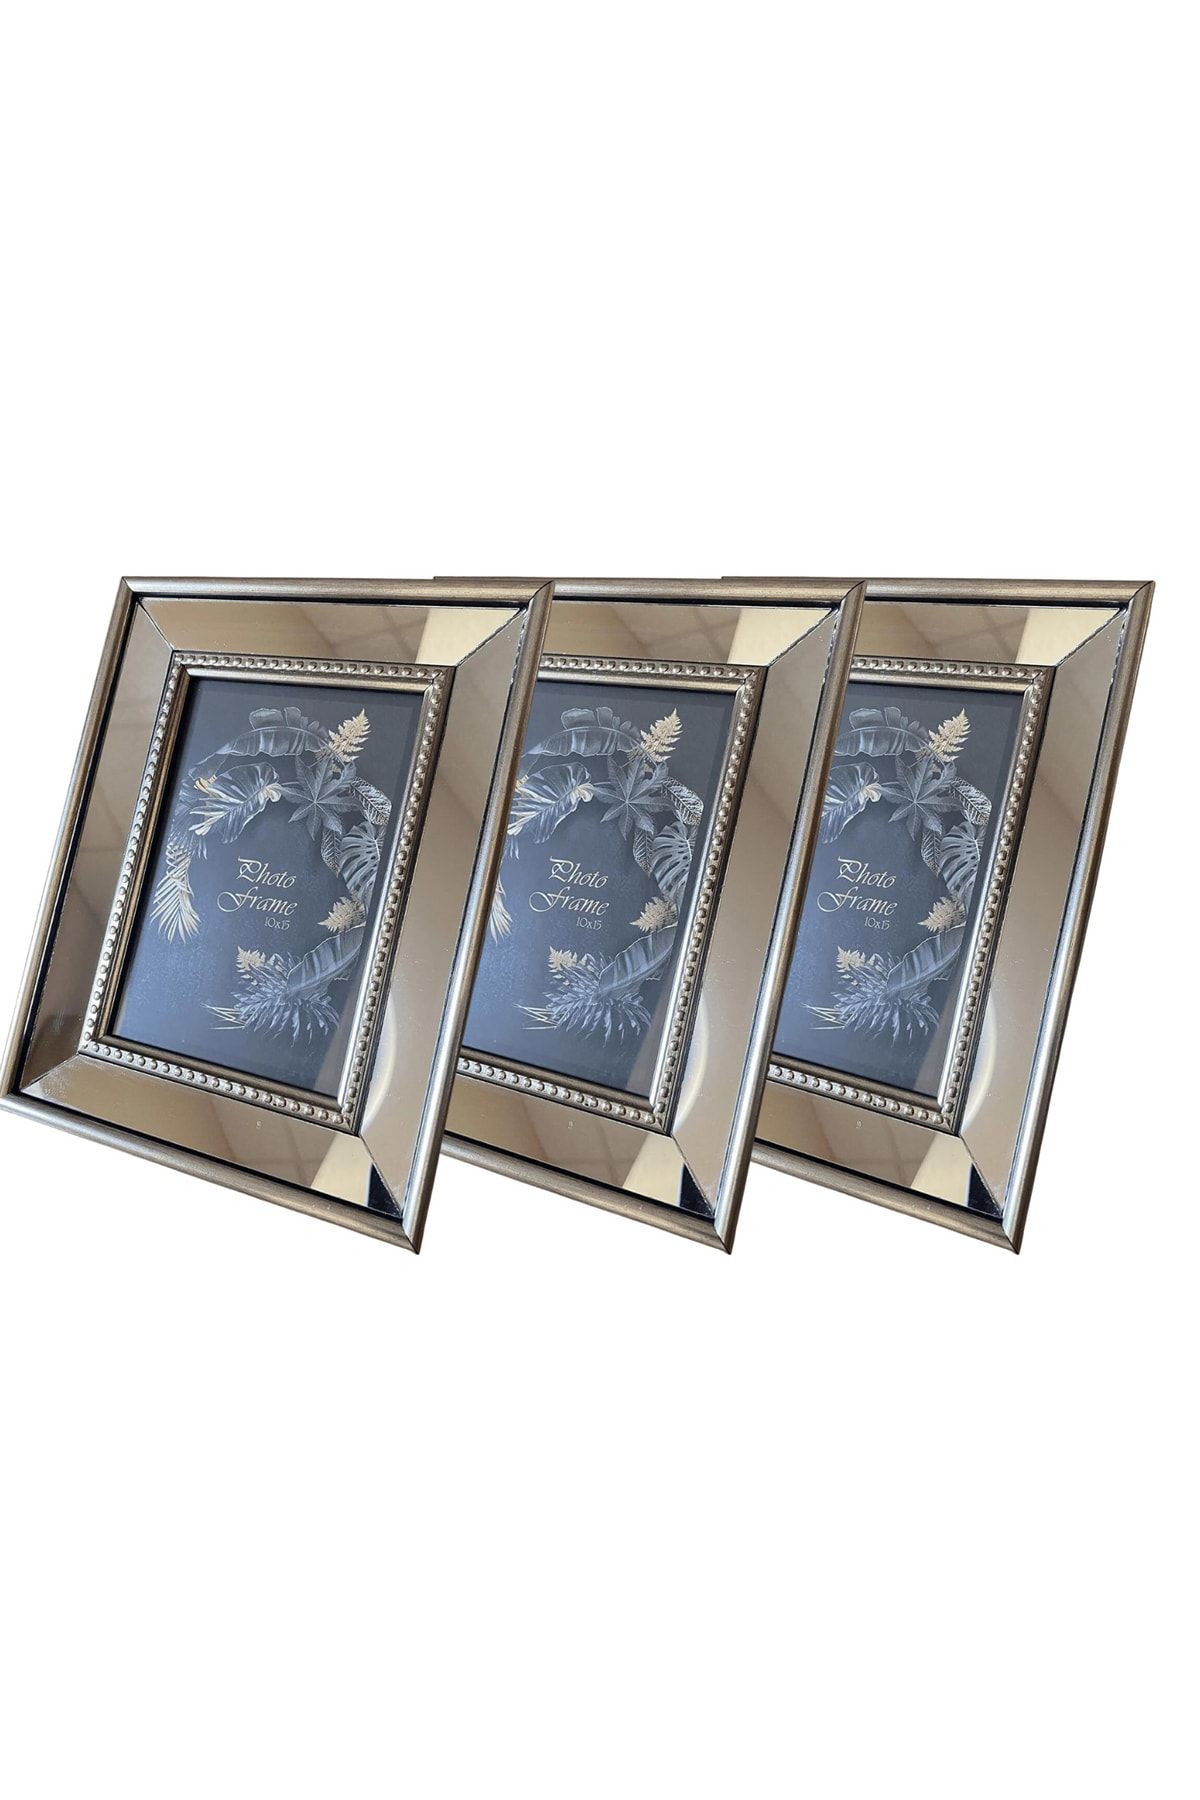 BELLARTE Aynalı Çerçeve, Gümüş Aynalı Fotoğraf Çerçevesi, Cam Çerçeve 10x15cm (3 ADET)